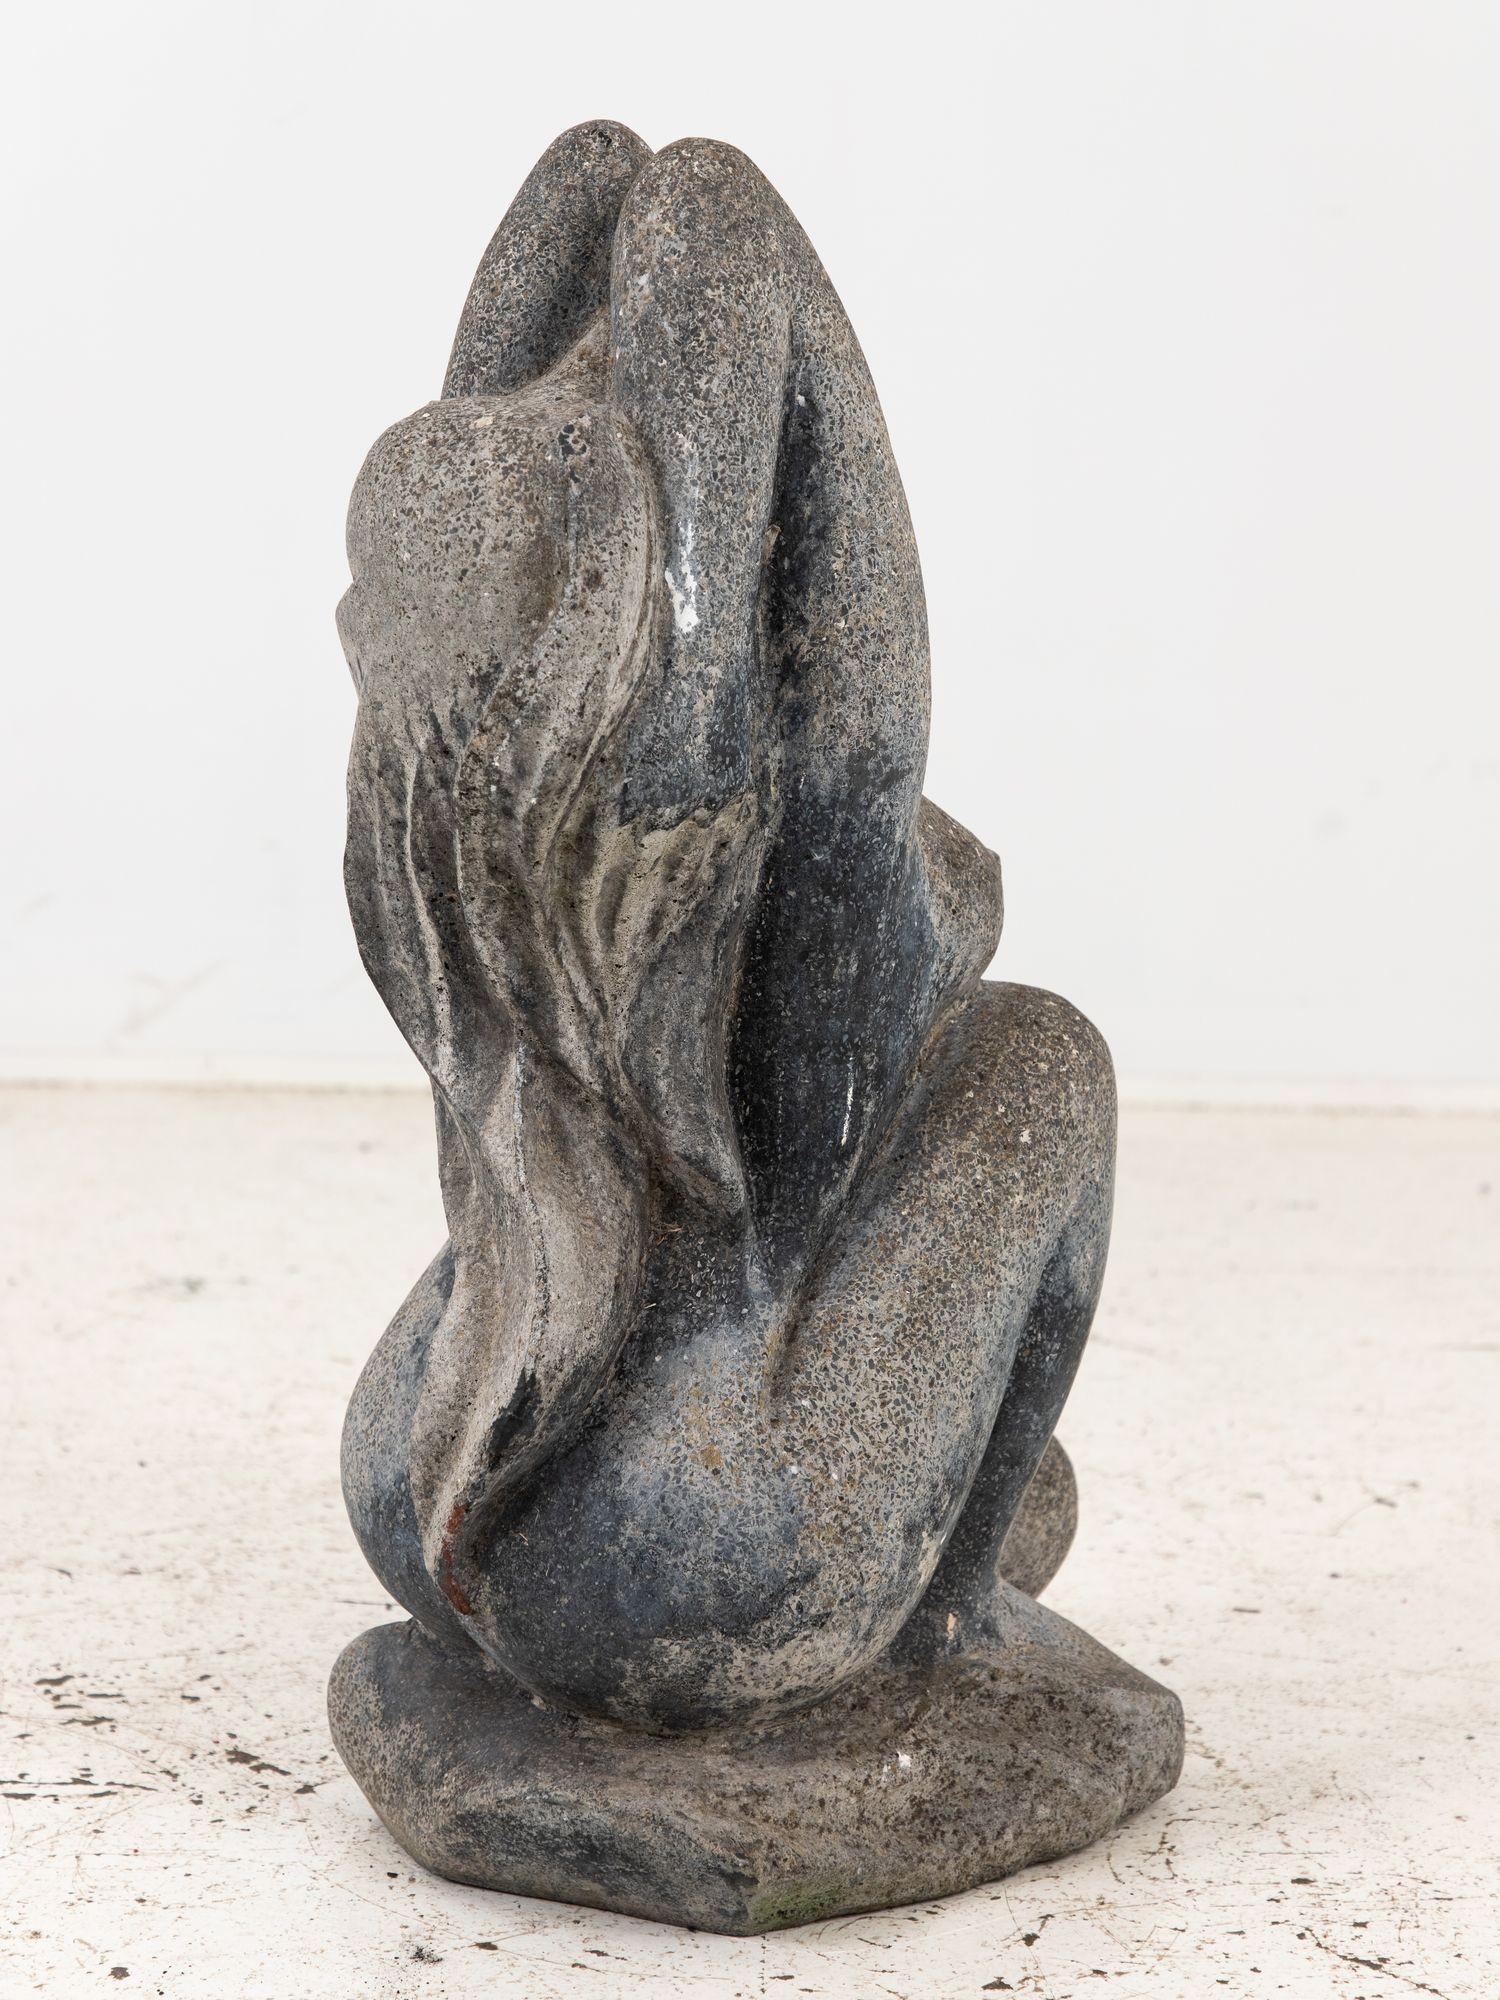 Diese meisterhaft aus Stein gehauene Skulptur aus dem 20. Jahrhundert stellt eine Frau in einem Moment der Entspannung dar. Mit langem, wallendem Haar, das ihr über den Rücken fällt, kniet sie anmutig nieder, und ihre Haltung strahlt ein Gefühl von